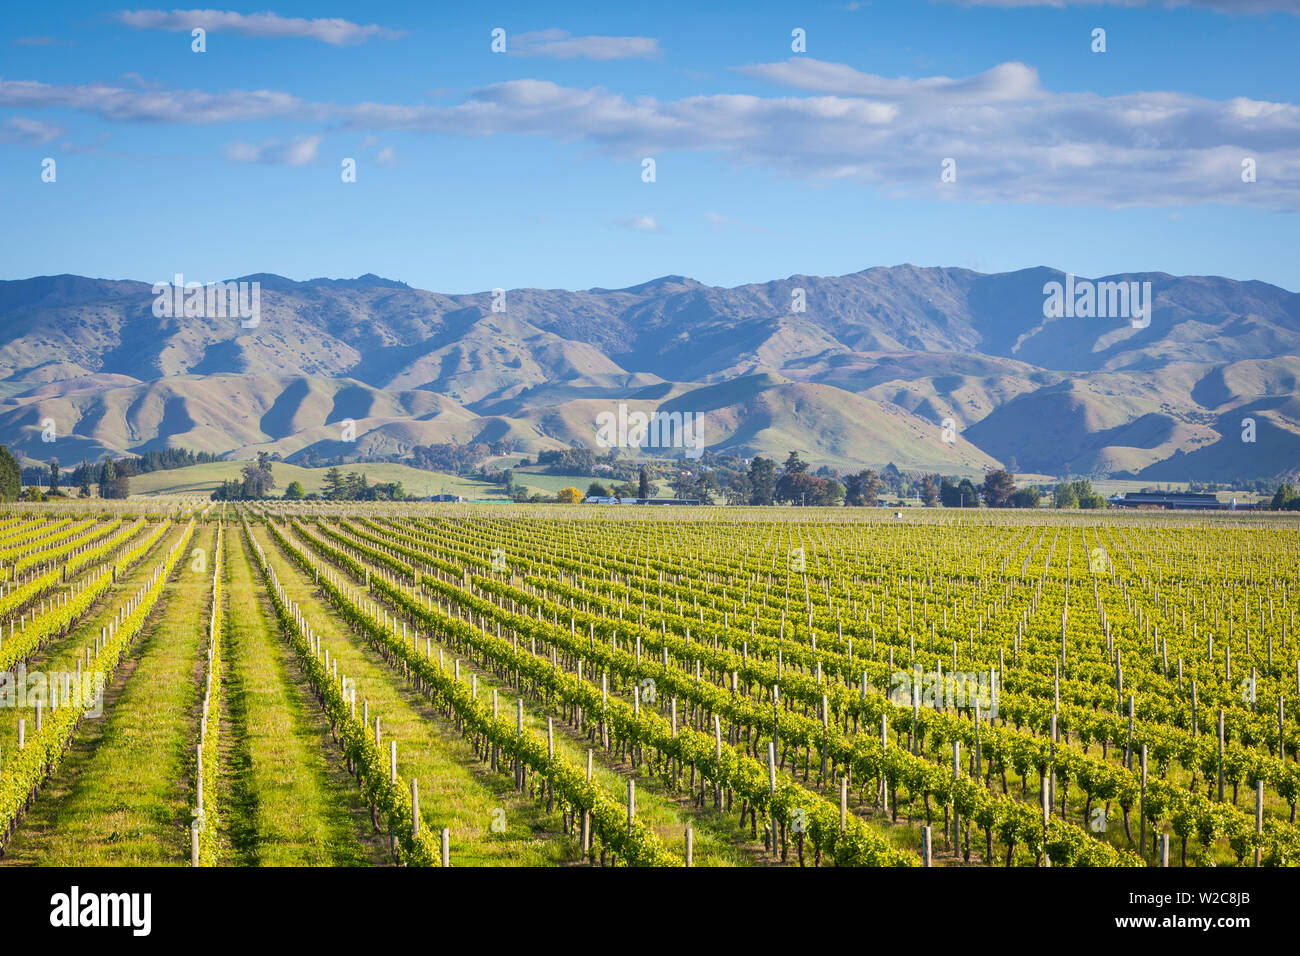 Los pintorescos viñedos, Blenheim, Marlborough, Isla del Sur, Nueva Zelanda Foto de stock